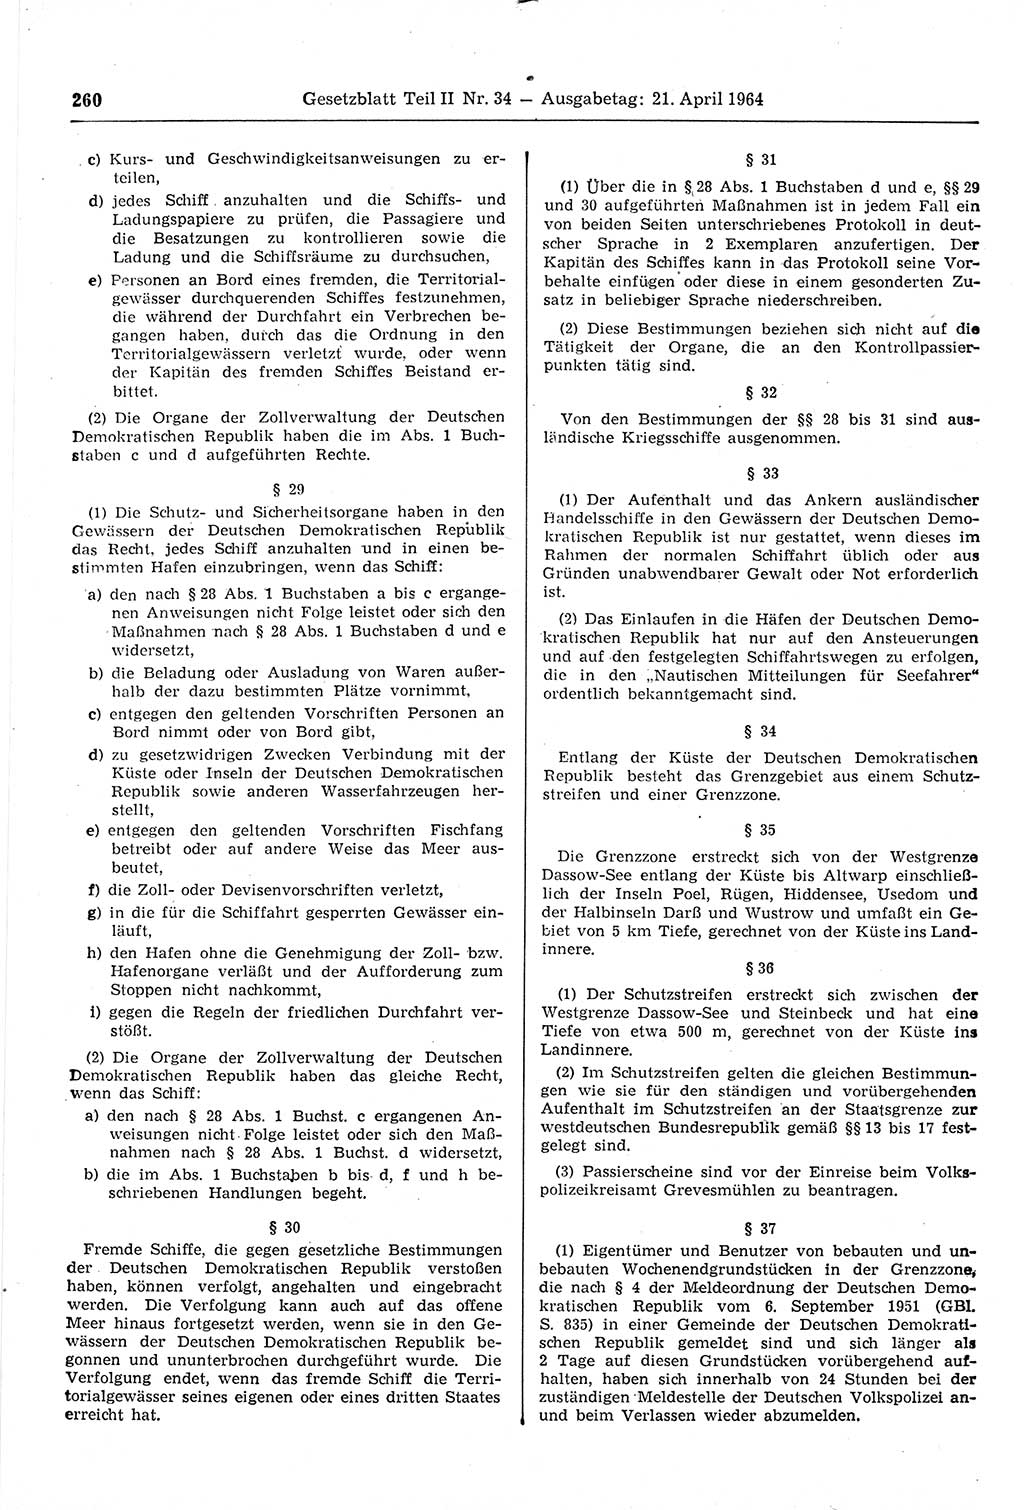 Gesetzblatt (GBl.) der Deutschen Demokratischen Republik (DDR) Teil ⅠⅠ 1964, Seite 260 (GBl. DDR ⅠⅠ 1964, S. 260)